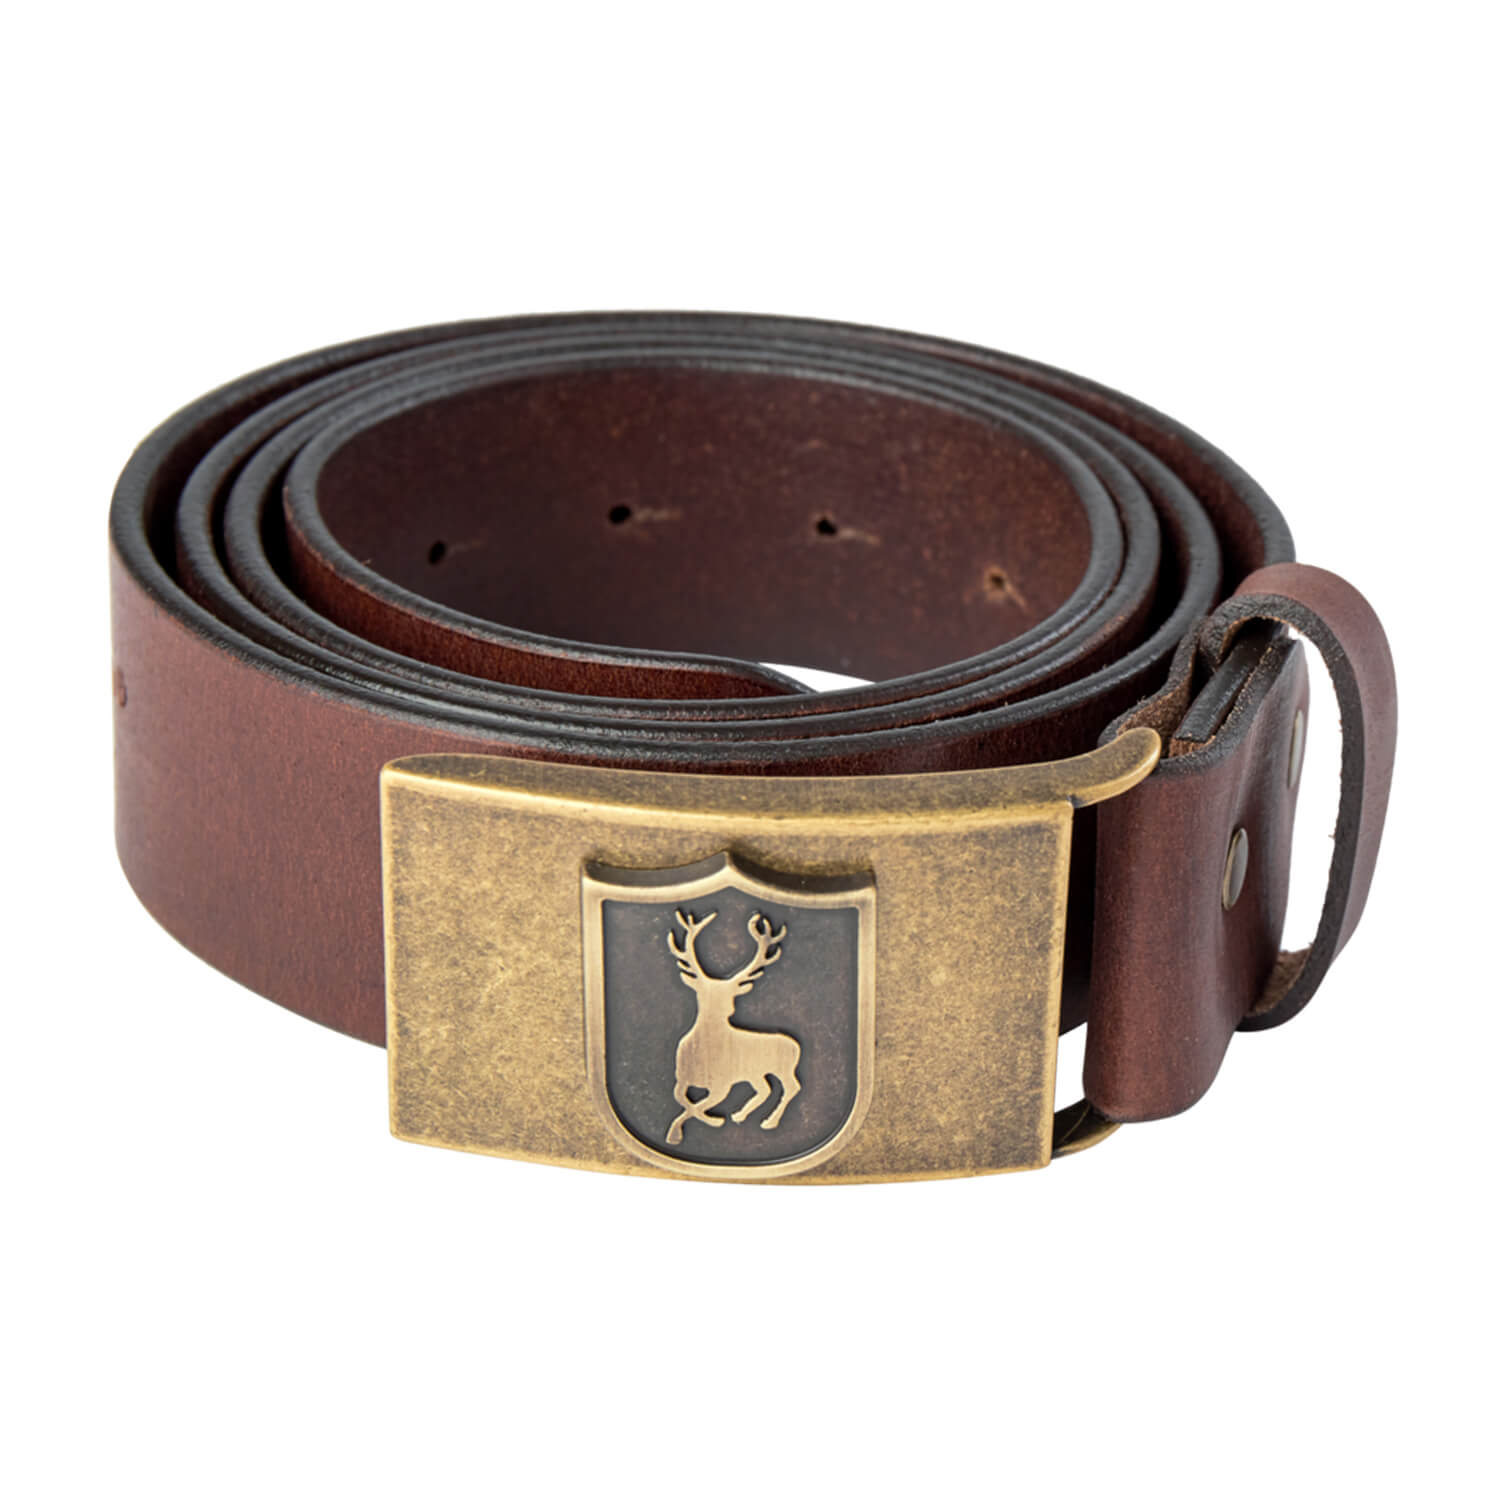 Deerhunter Leather Belt (Cognac brown)